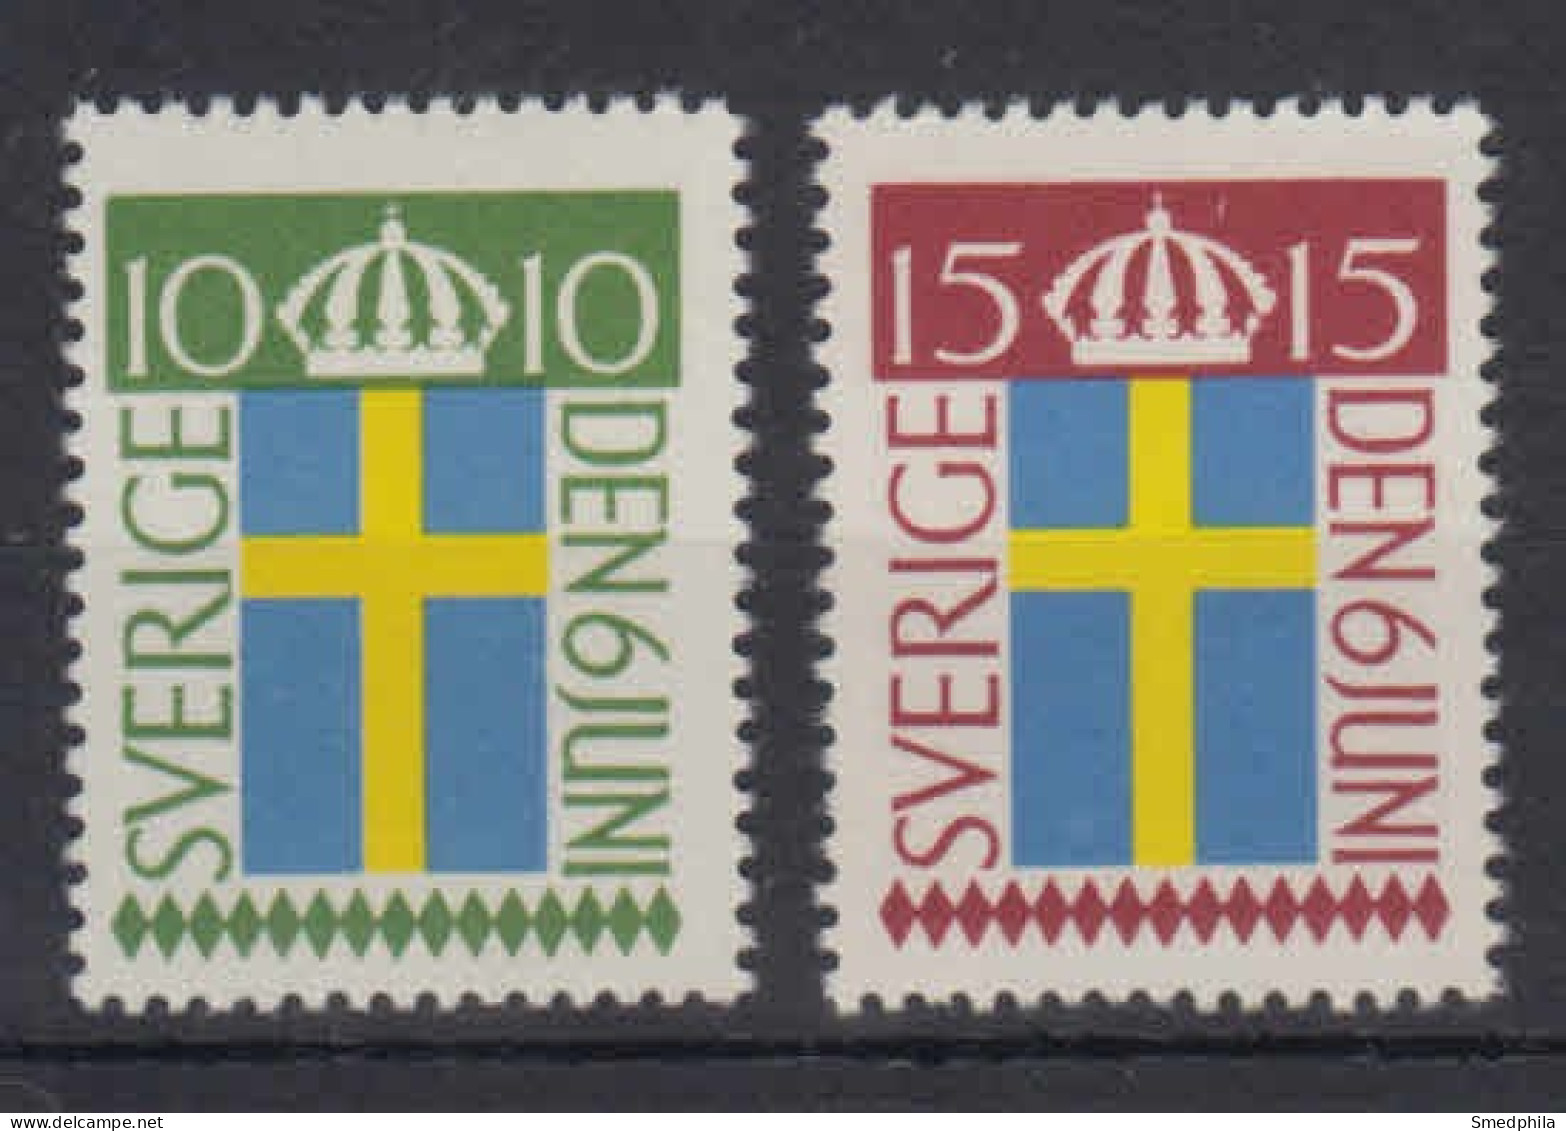 Sweden 1955 - Michel 404-405 MNH ** - Ungebraucht